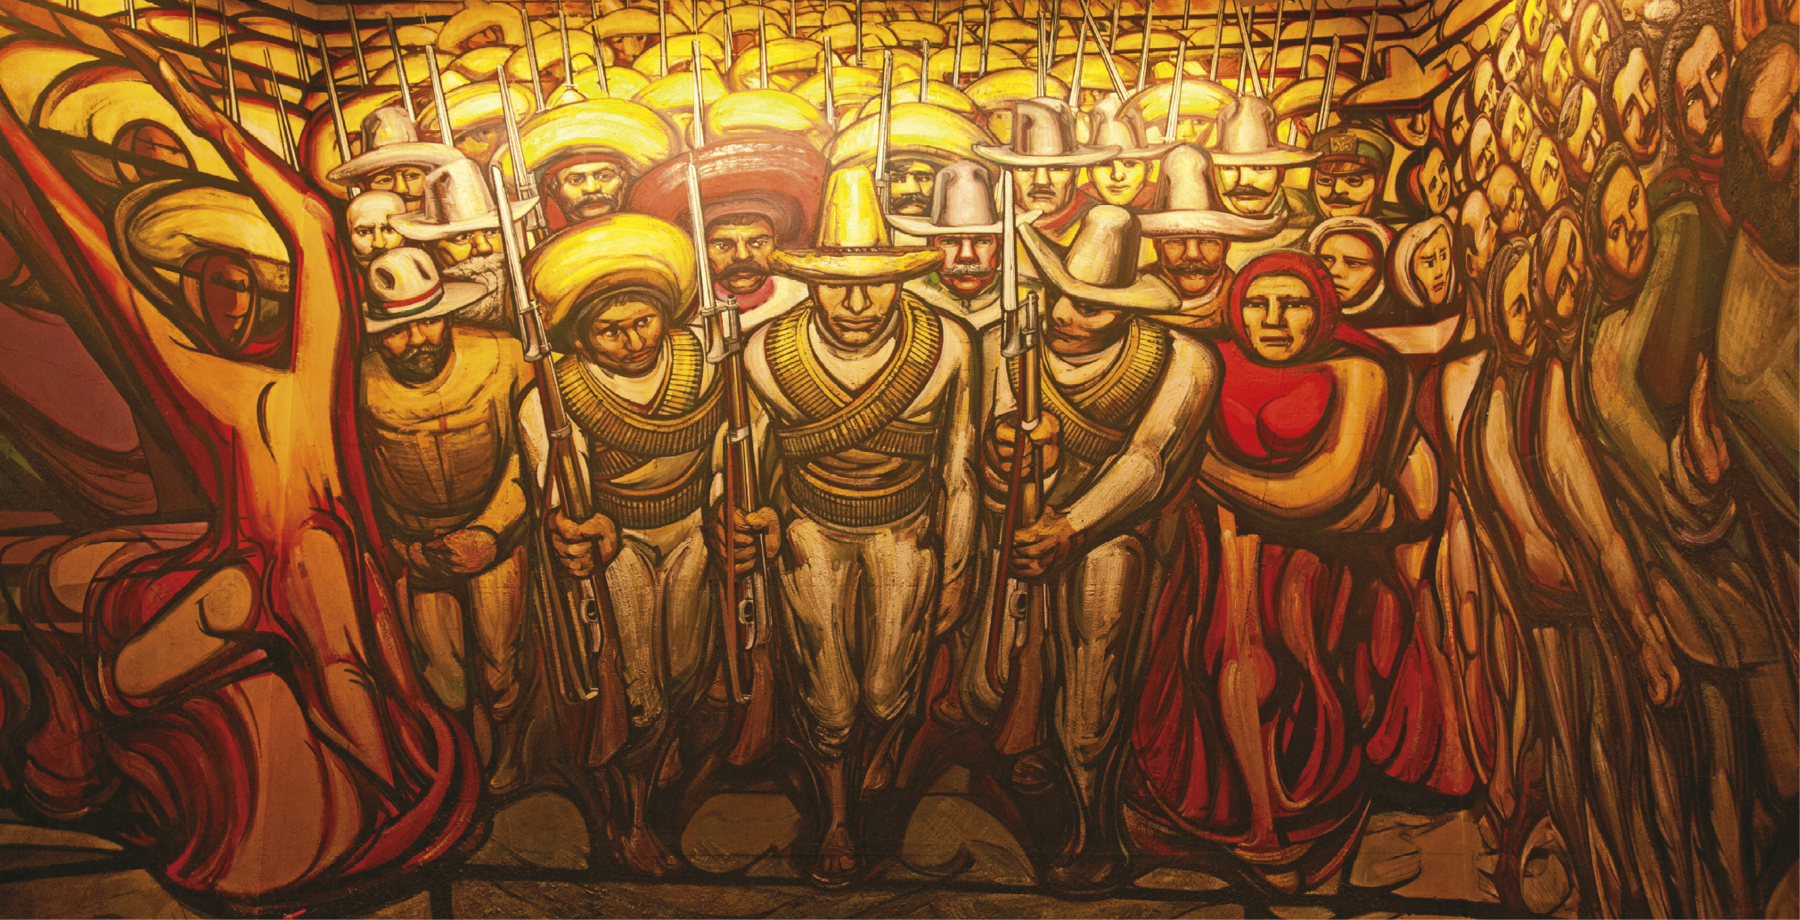 Pintura. Grupo de pessoas reunidas. À direita, mulheres e homens não armados. No centro, homens armados, usando grandes chapéus e carregando cartucheiras penduradas no corpo.